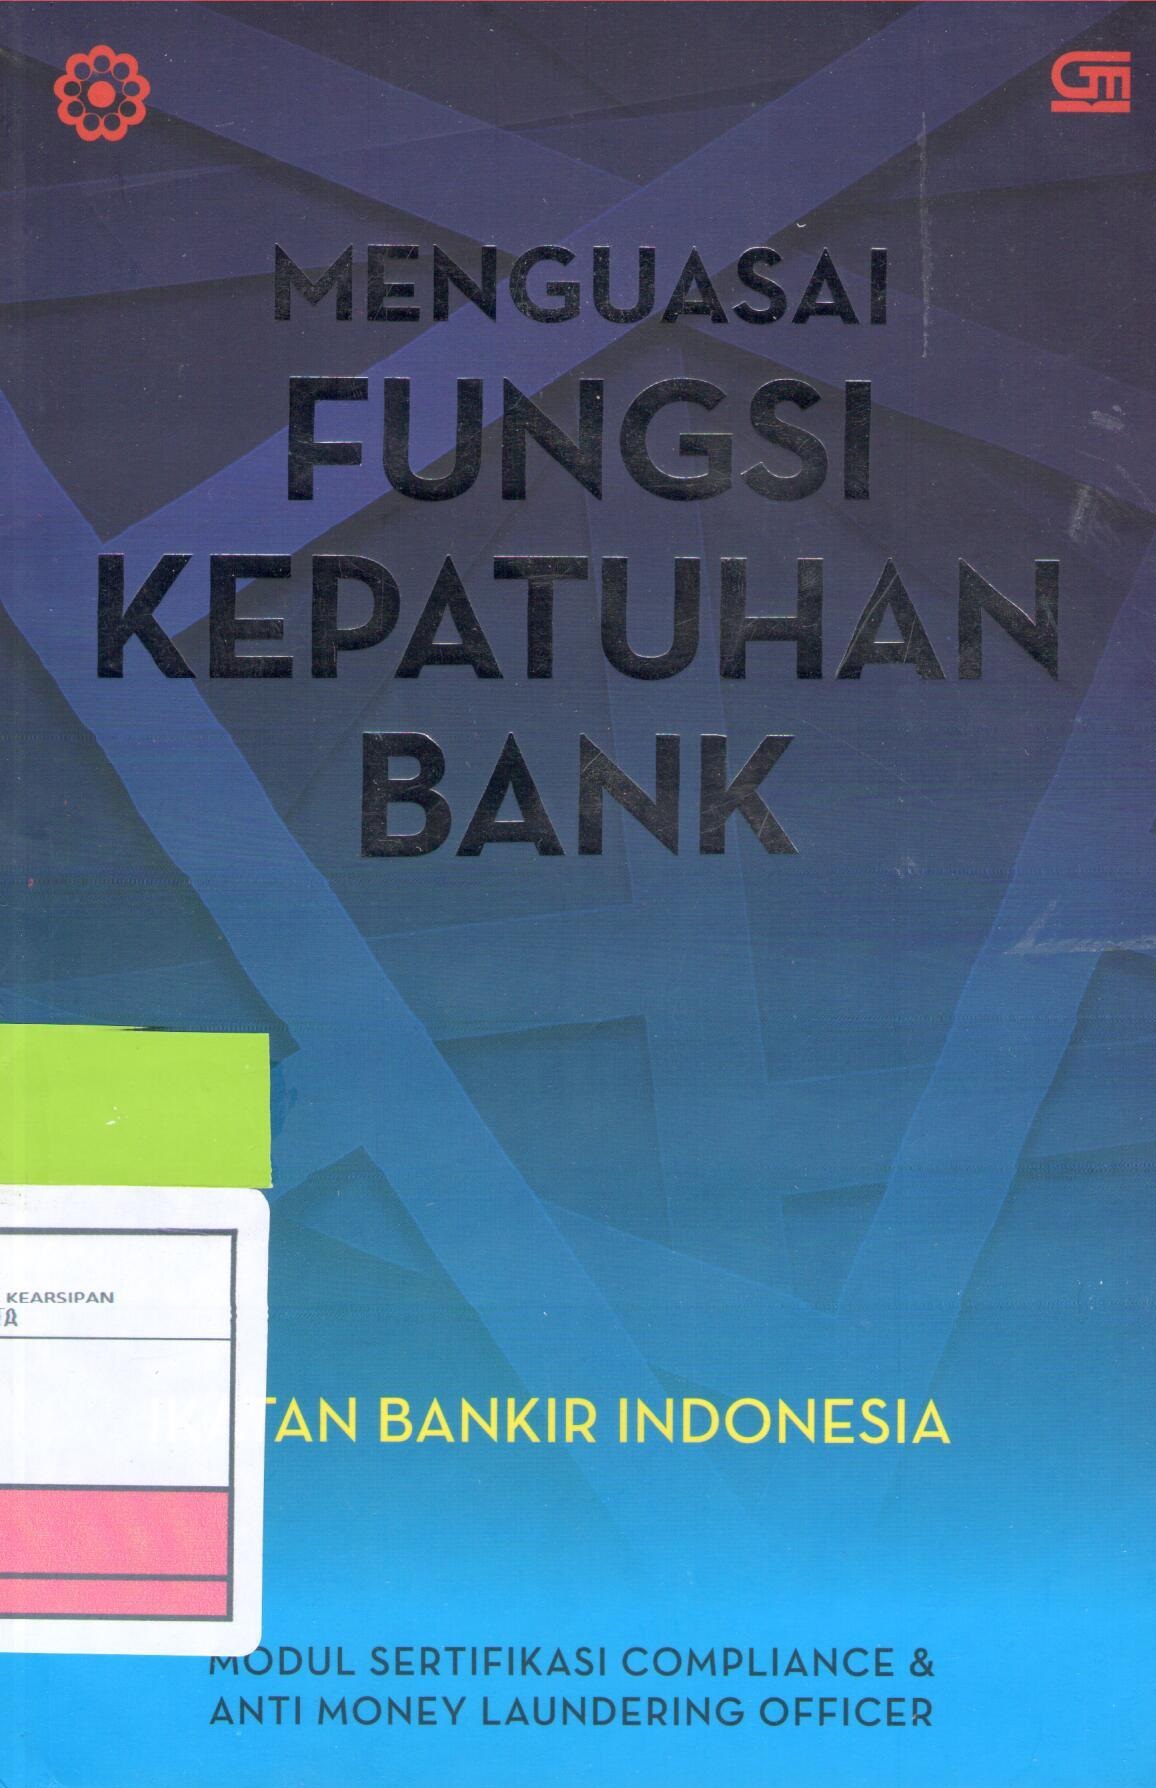 Menguasai fungsi kepatuhan bank :  Modul sertifikasi compliance & anti money laundering officer